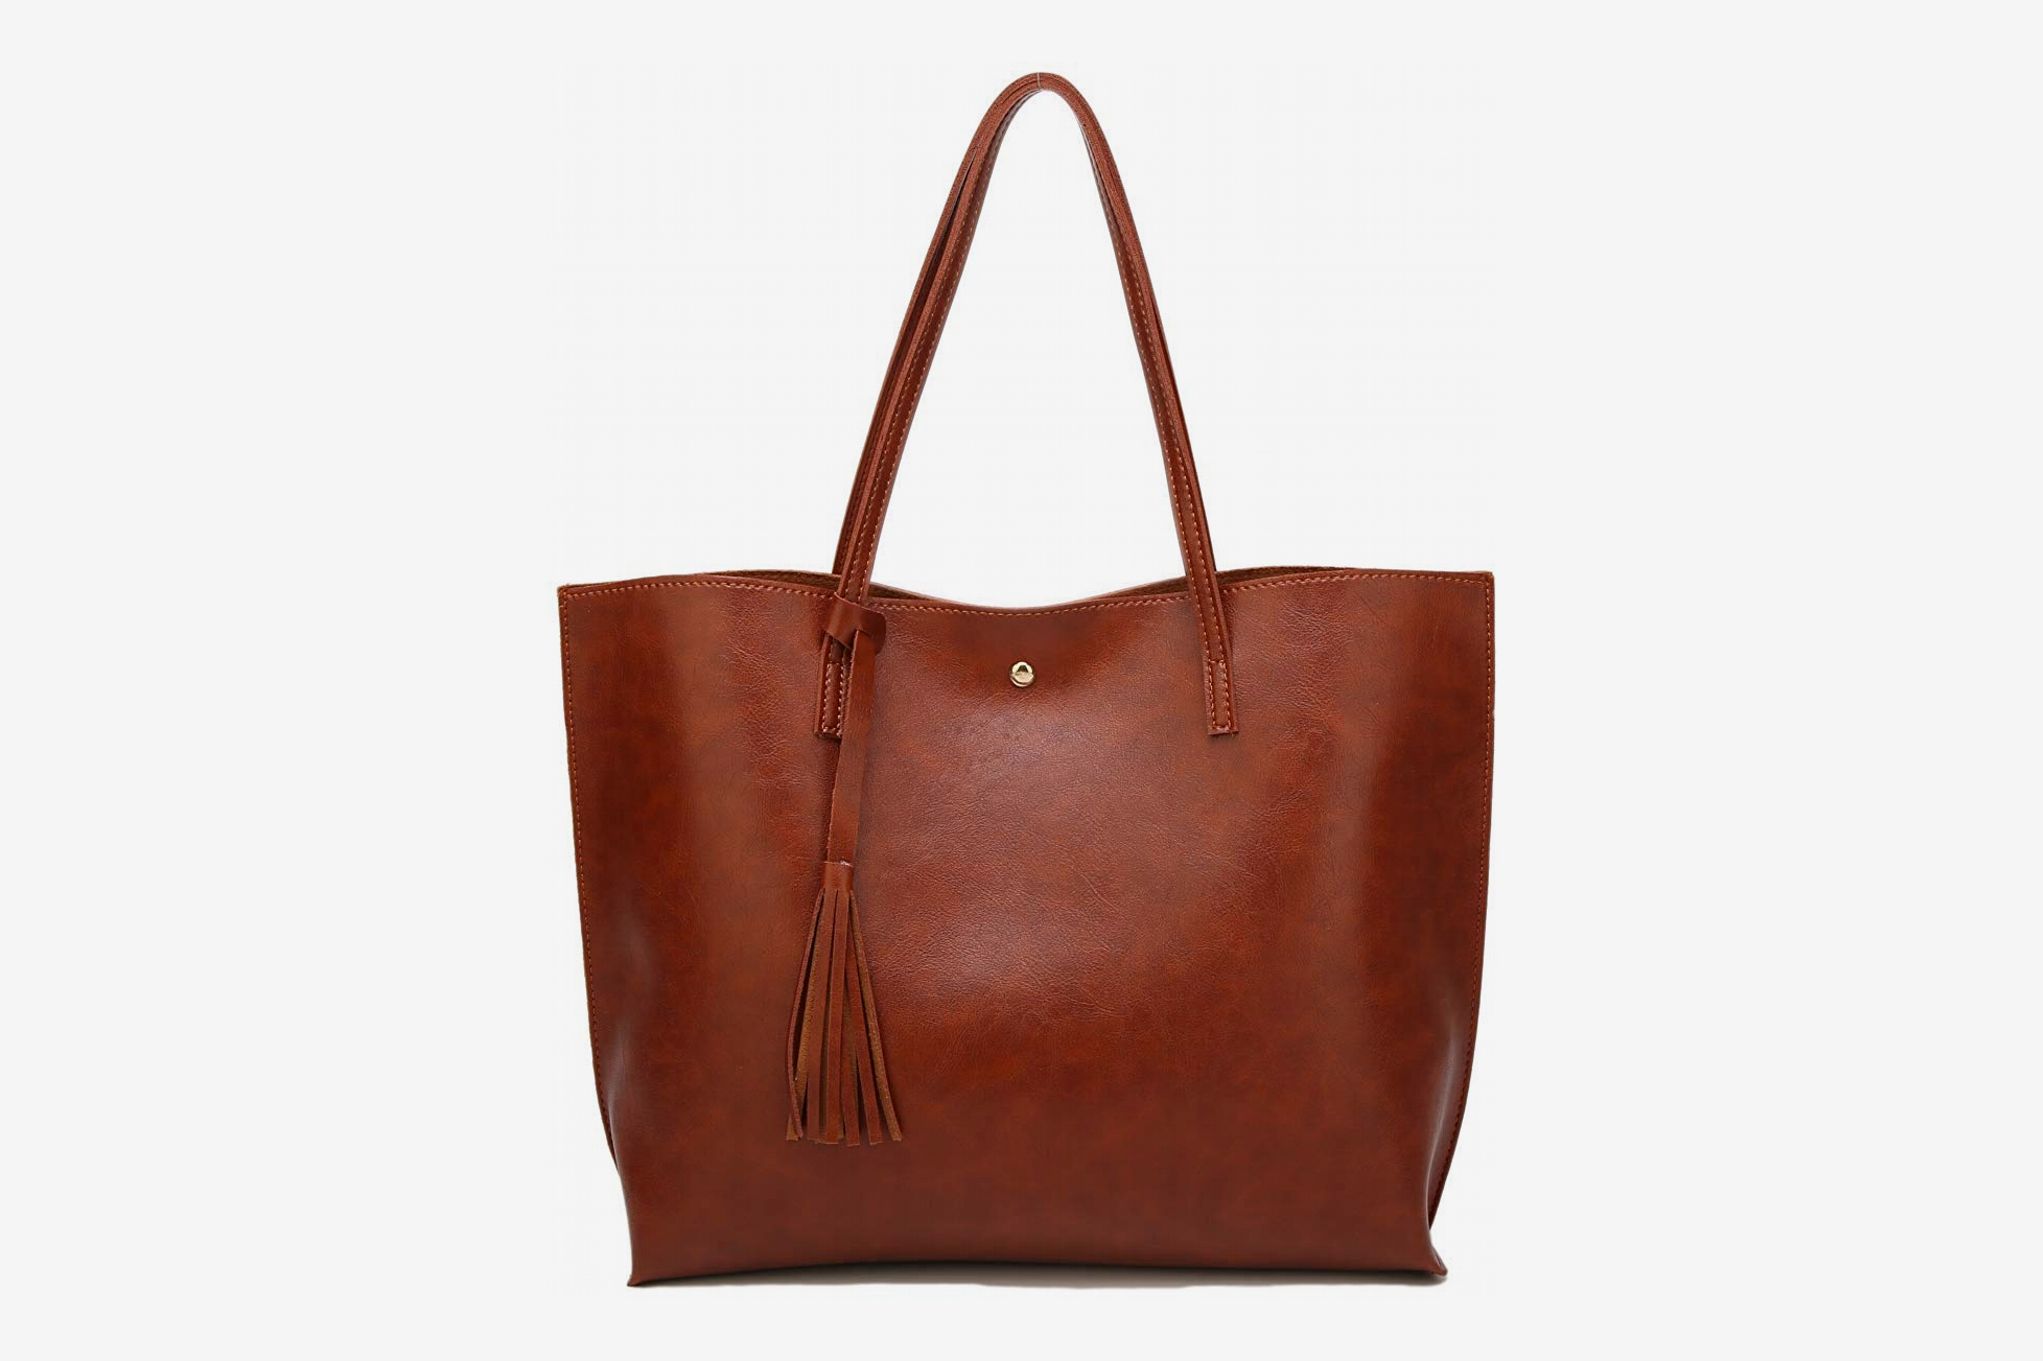 New  Women PU Leather Tote Bag Shoulder Bag  Messenger Bag Hand Bag 9 Colors Bag